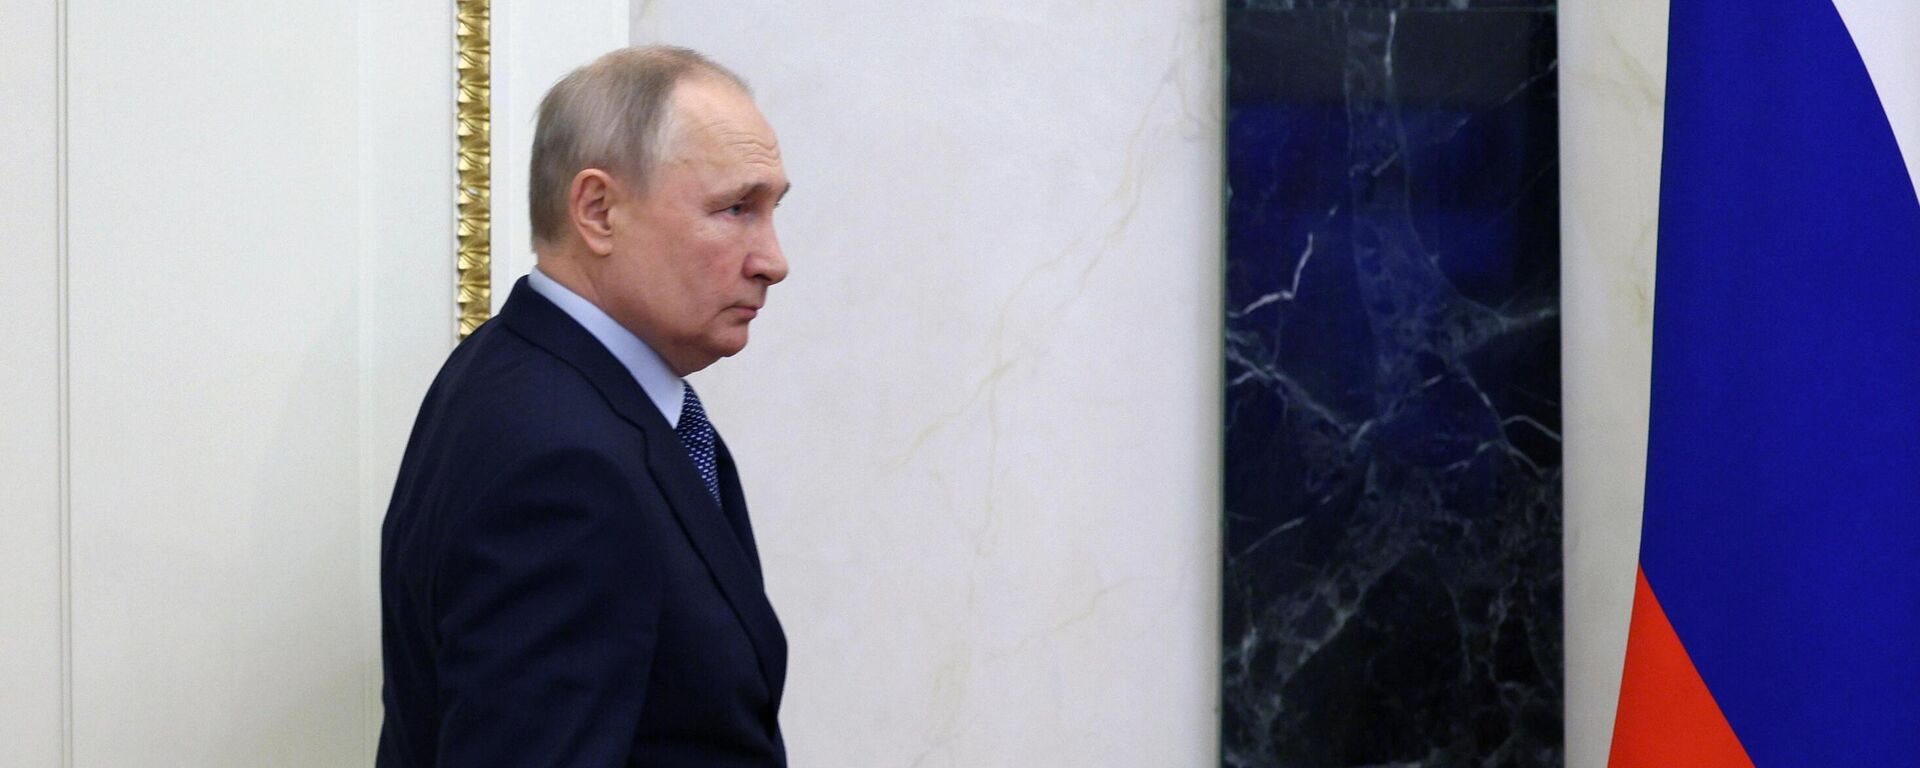 Президент РФ Владимир Путин перед началом совещания с членами Совбеза, 31 марта 2023 - Sputnik Латвия, 1920, 31.03.2023